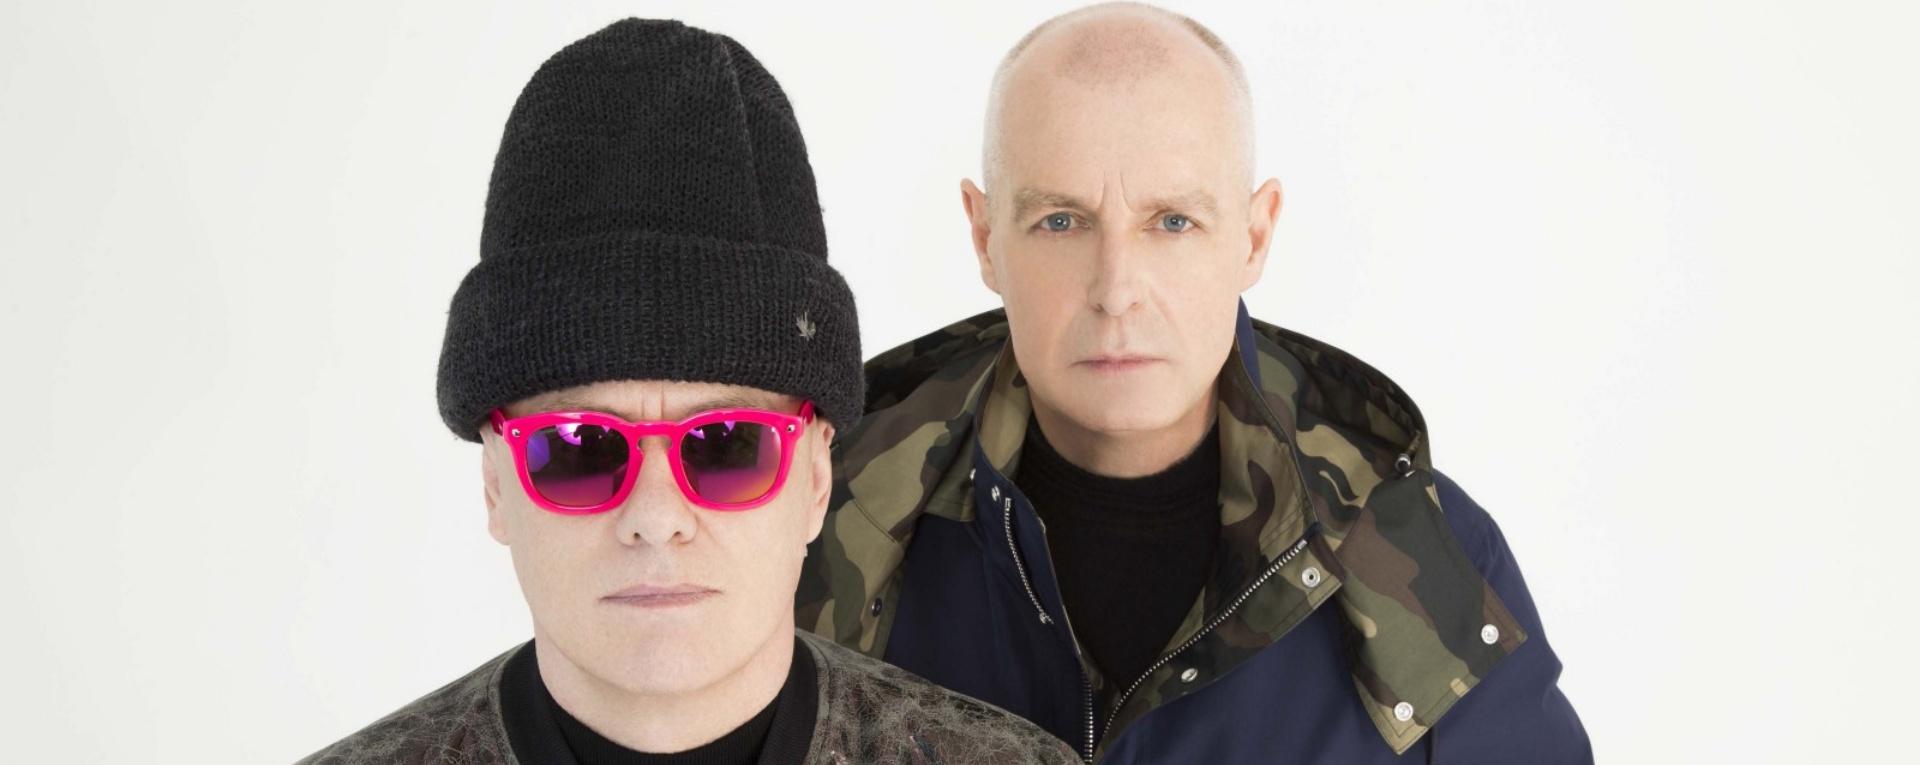 Los Pet Shop Boys viajan por internet en su sencillo “On Social Media”